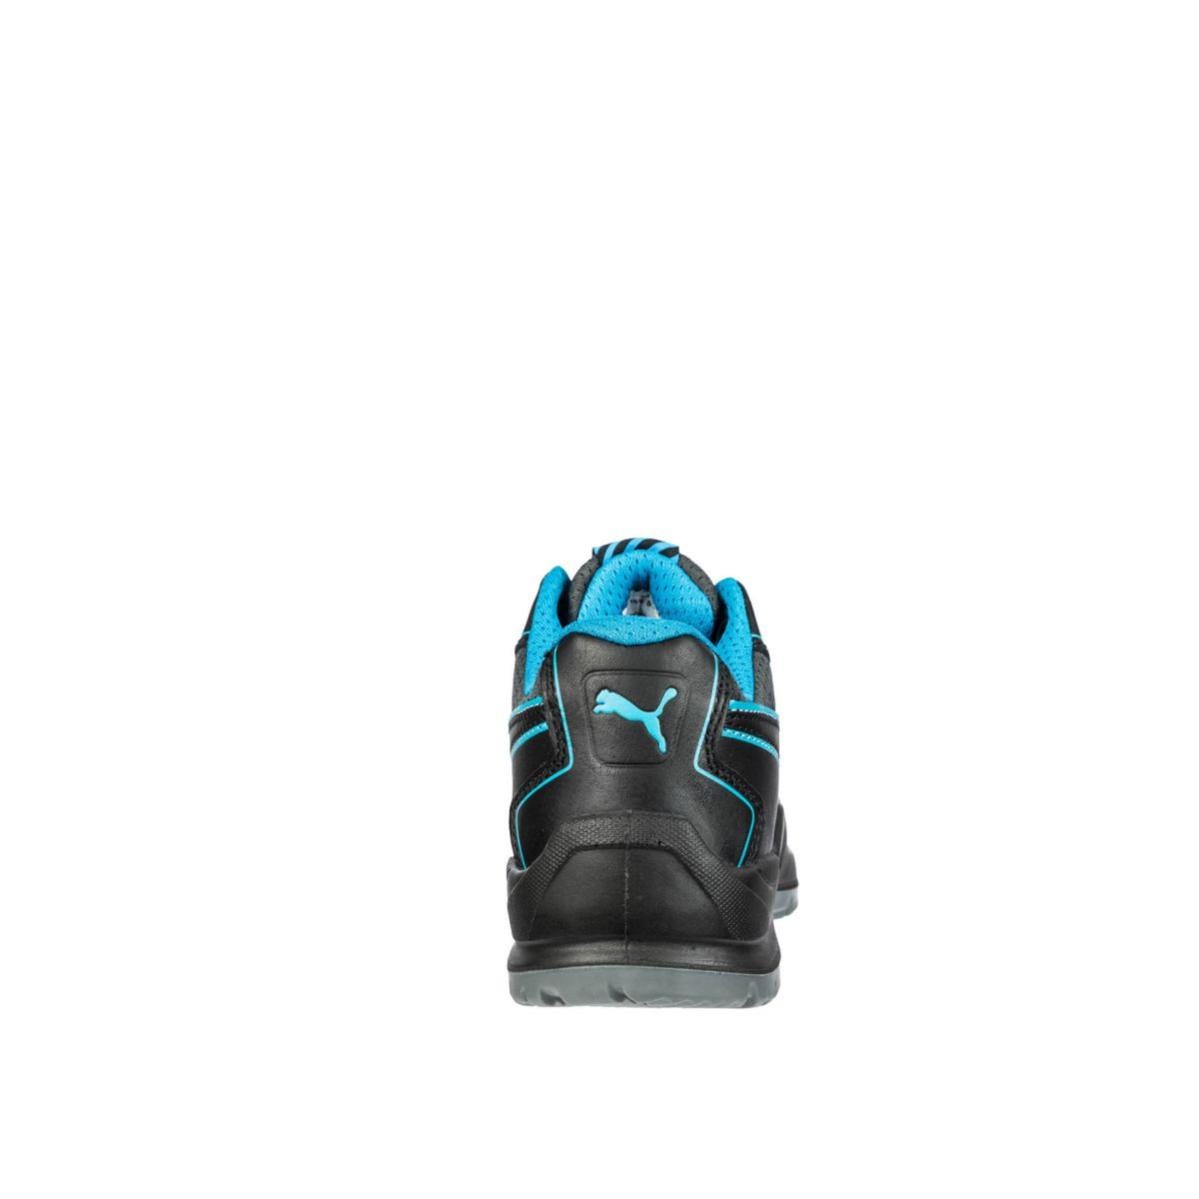 Chaussures de sécurité Niobe low WNS S3 ESD SRC bleu - Puma - Taille 40 1